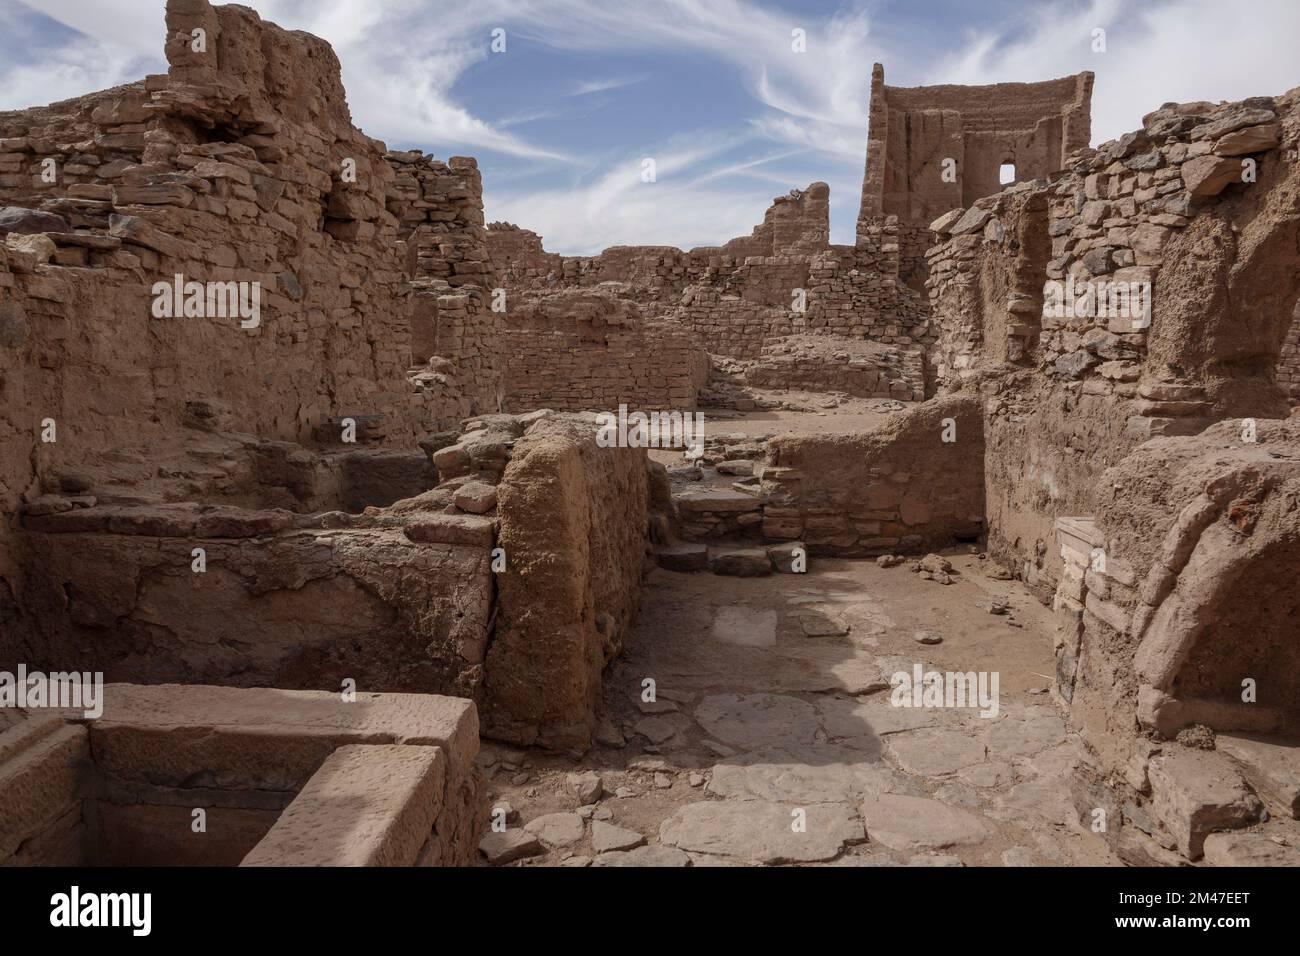 The Monastery of Anba Hatre, also known as St Simeon, Aswan, Egypt Stock Photo